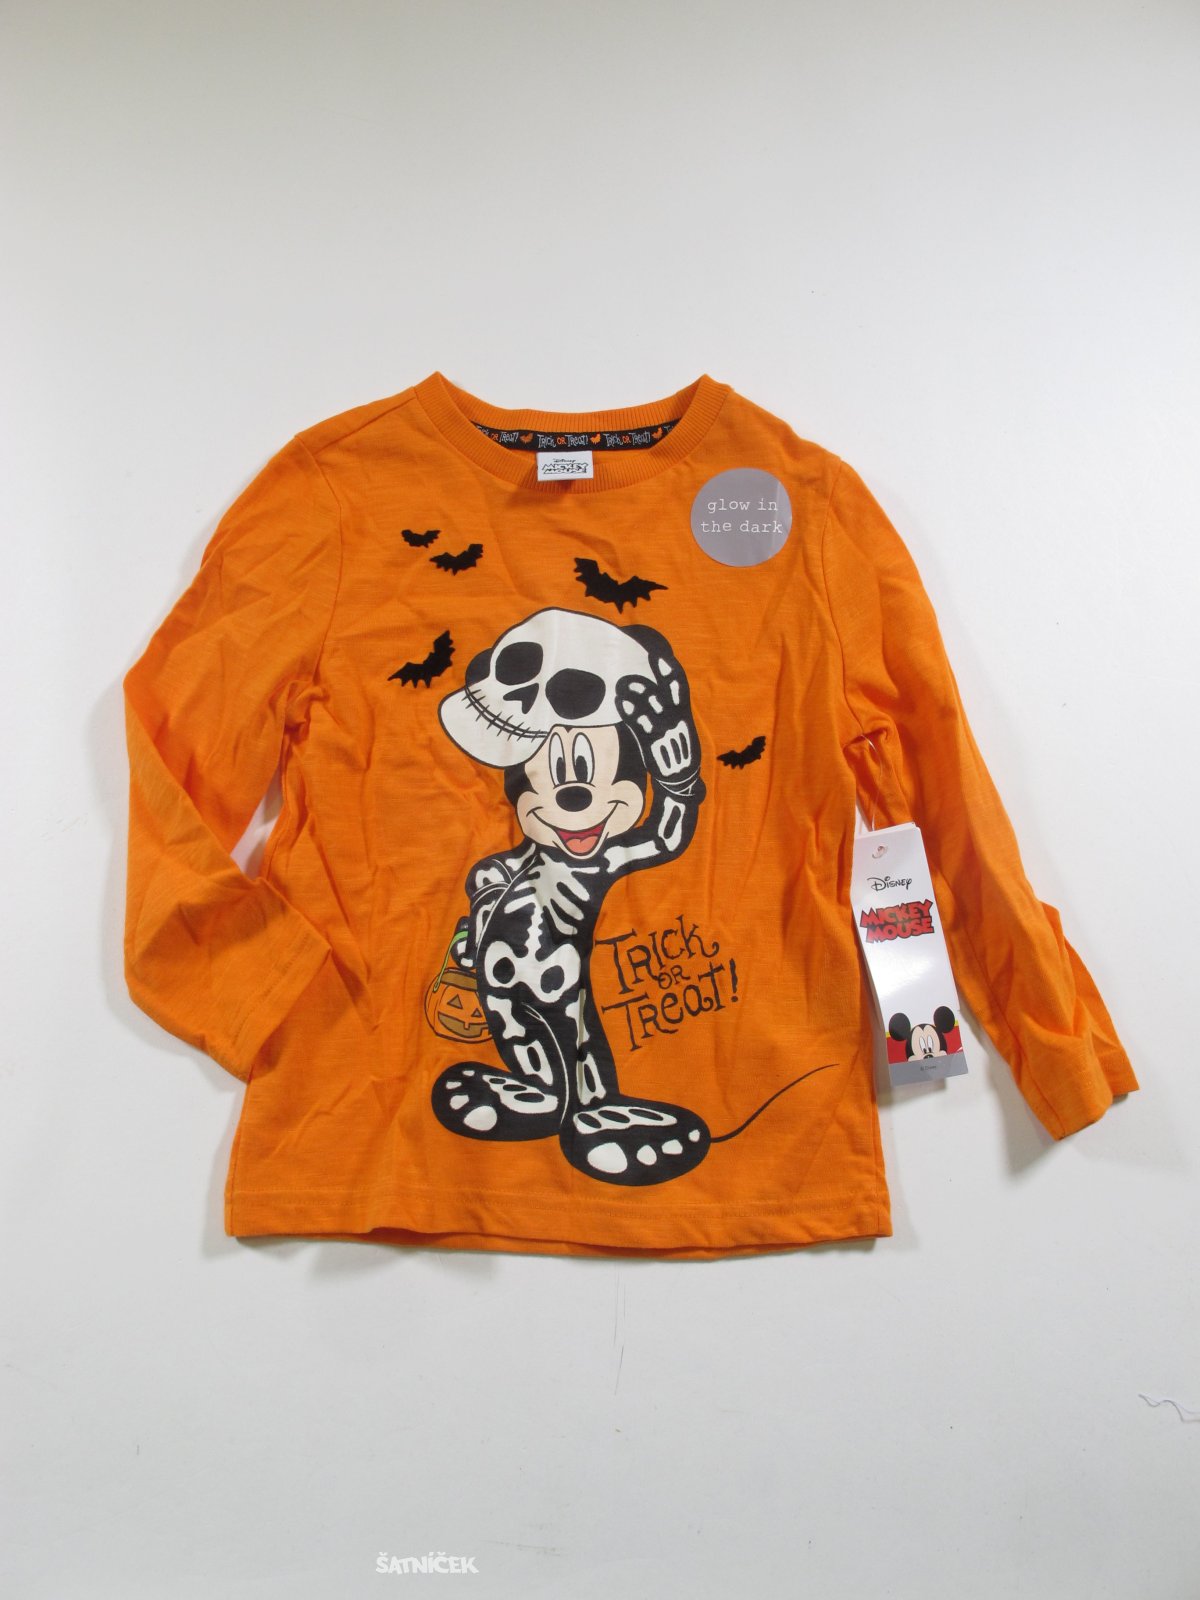 Oranžové triko Mickey outlet